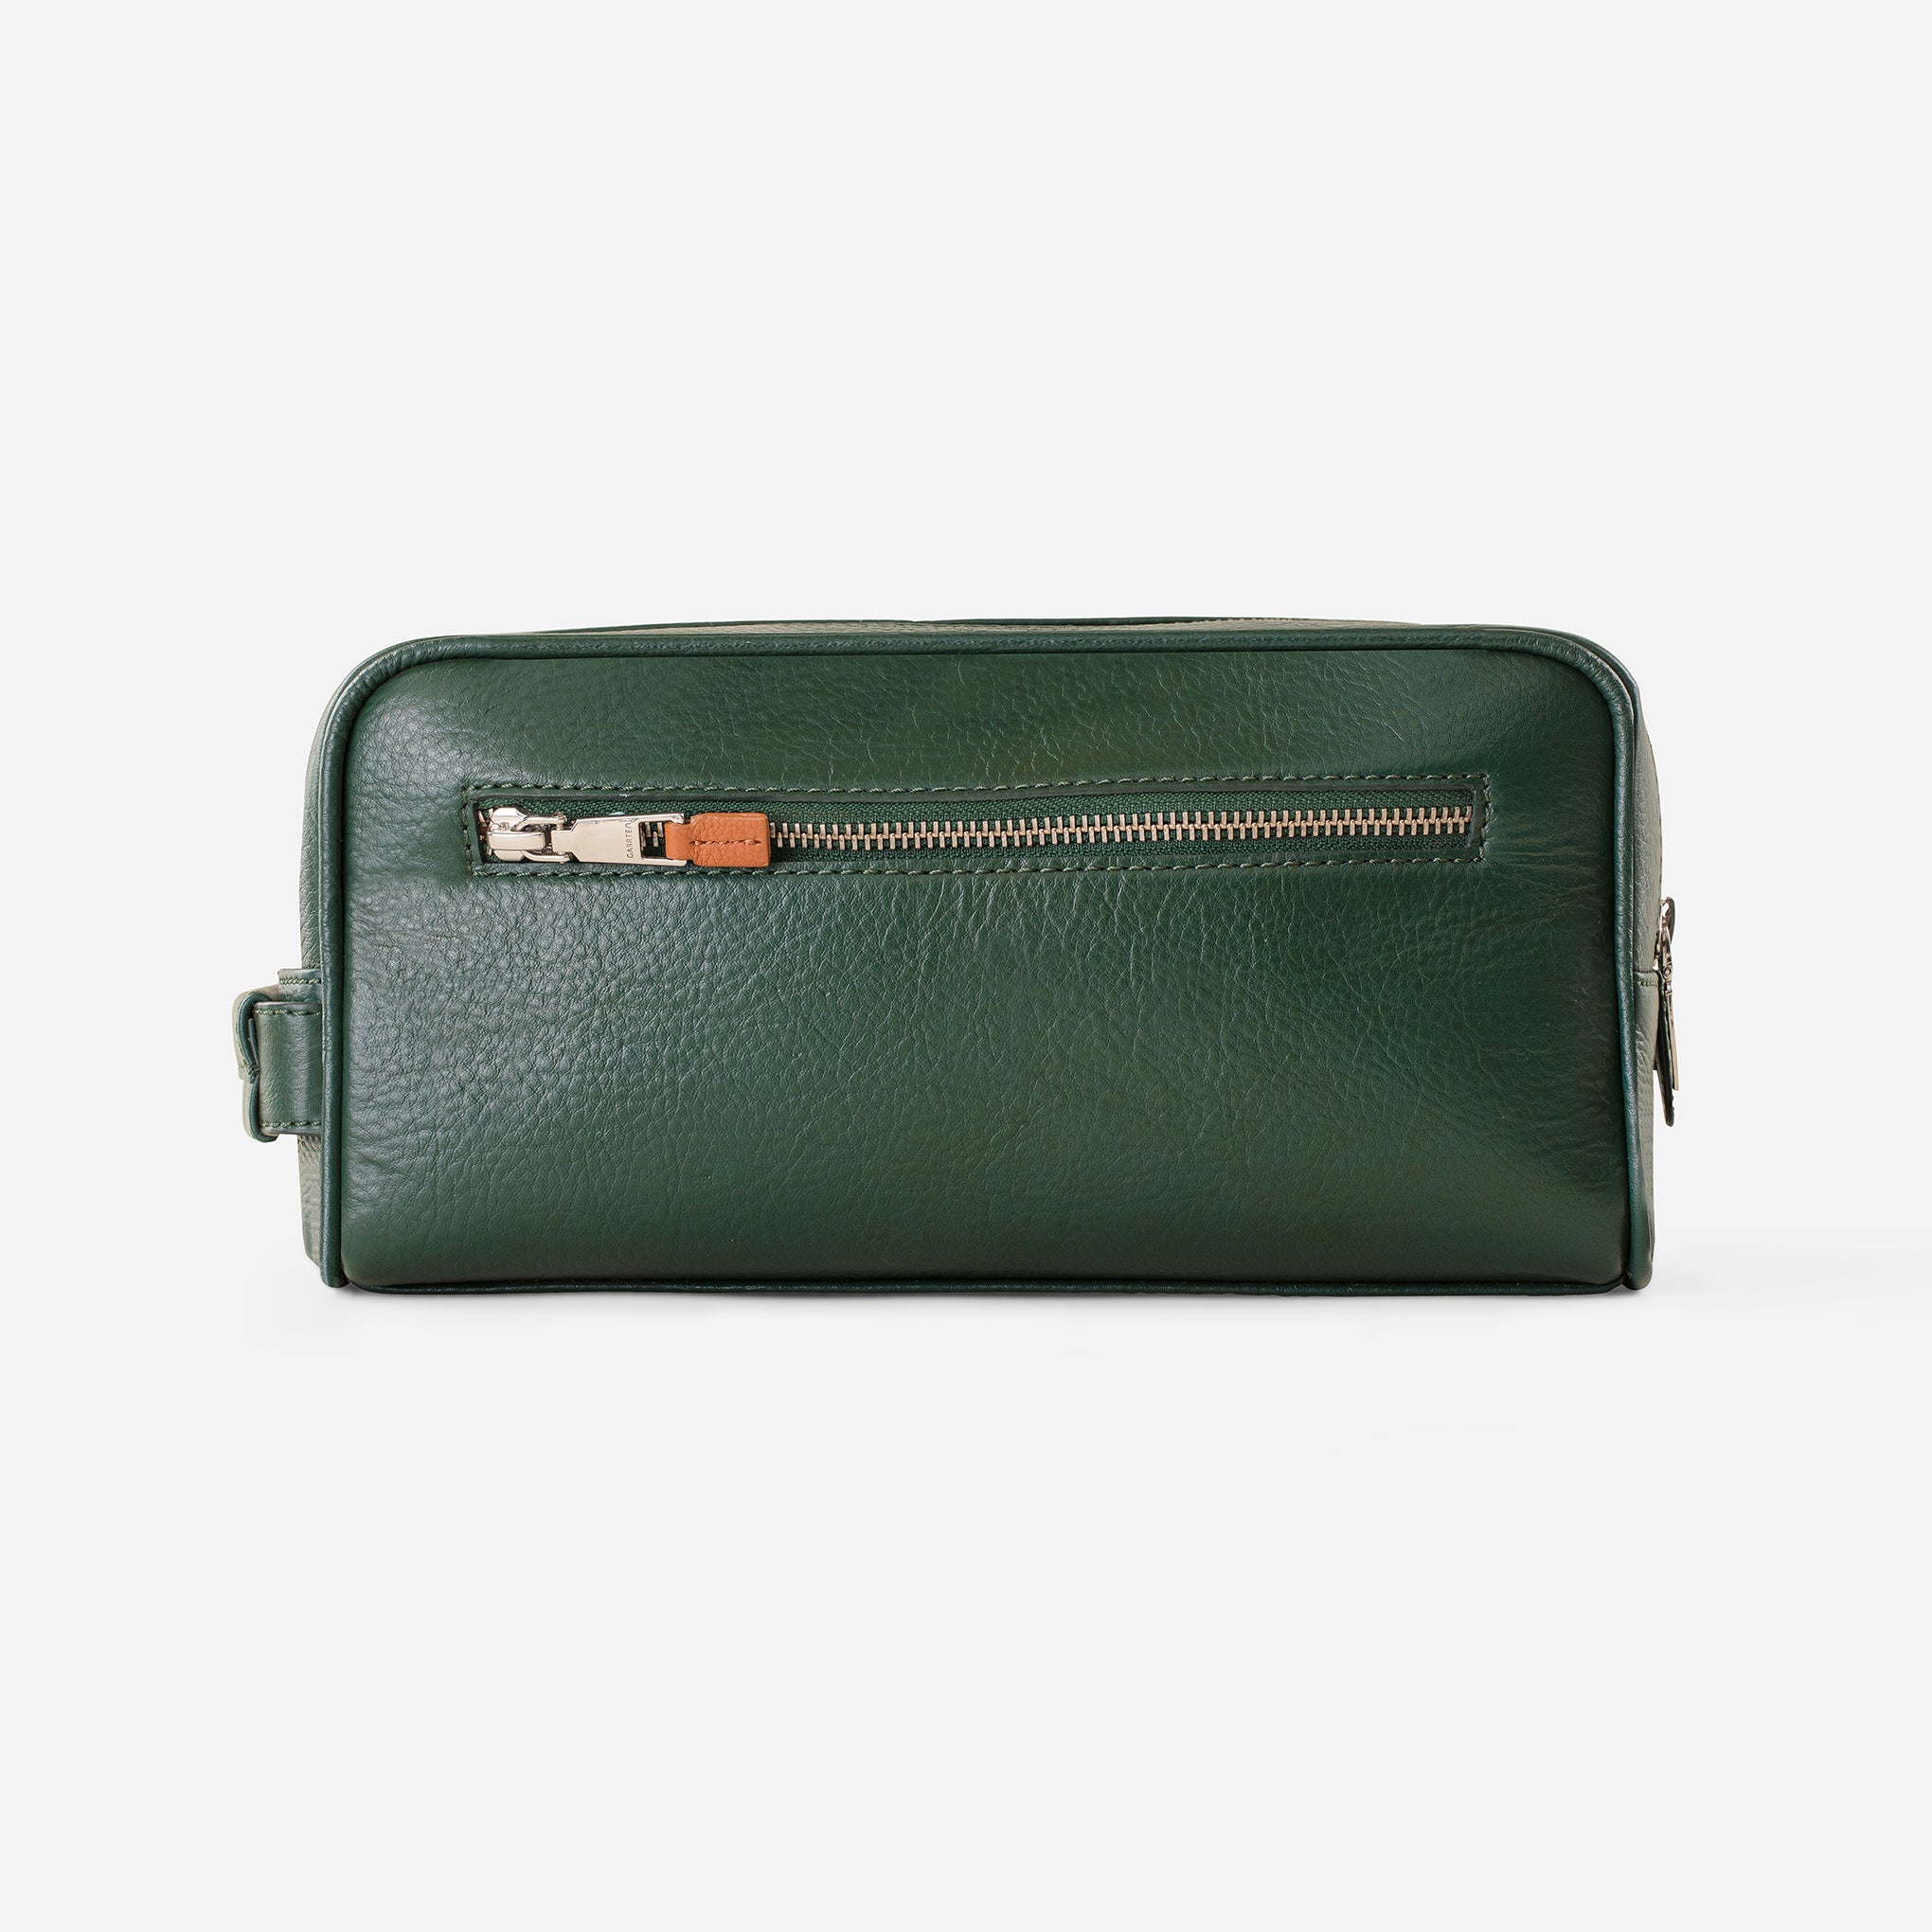 Classic Bosca Leather Utili-Kit Made In USA Shaving Bag Dopp Kit Toilet Kit  | eBay